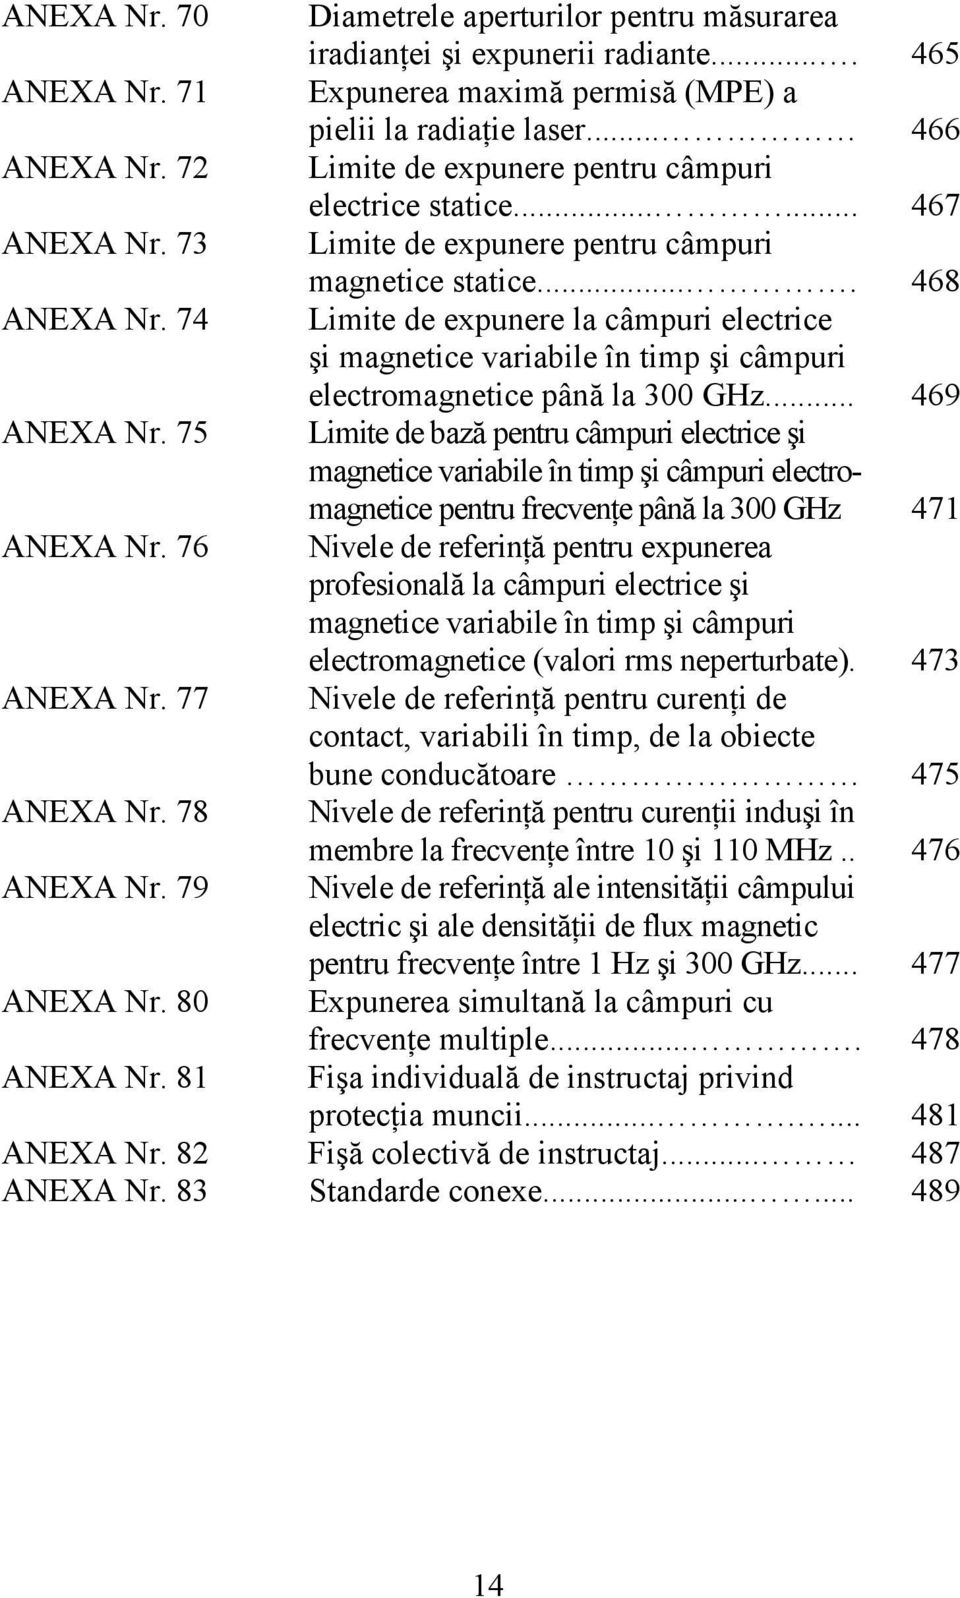 74 Limite de expunere la câmpuri electrice şi magnetice variabile în timp şi câmpuri electromagnetice până la 300 GHz... 469 ANEXA Nr.